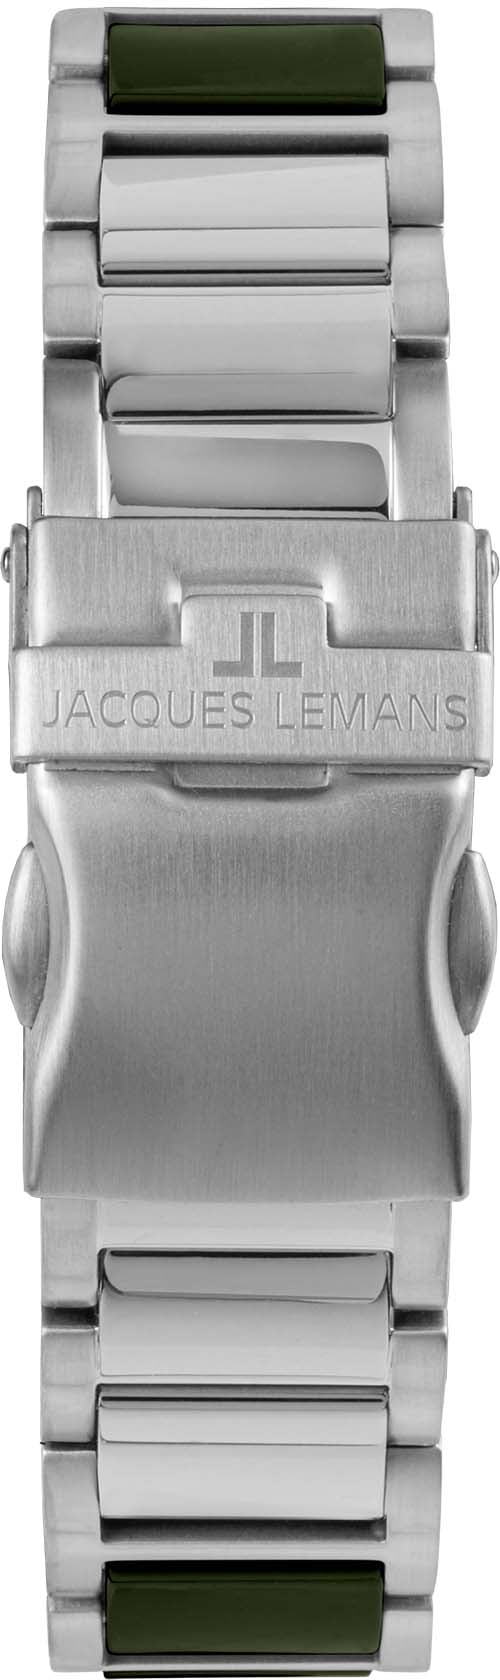 Jacques Lemans Keramikuhr BAUR »Liverpool, online 42-10C« kaufen 